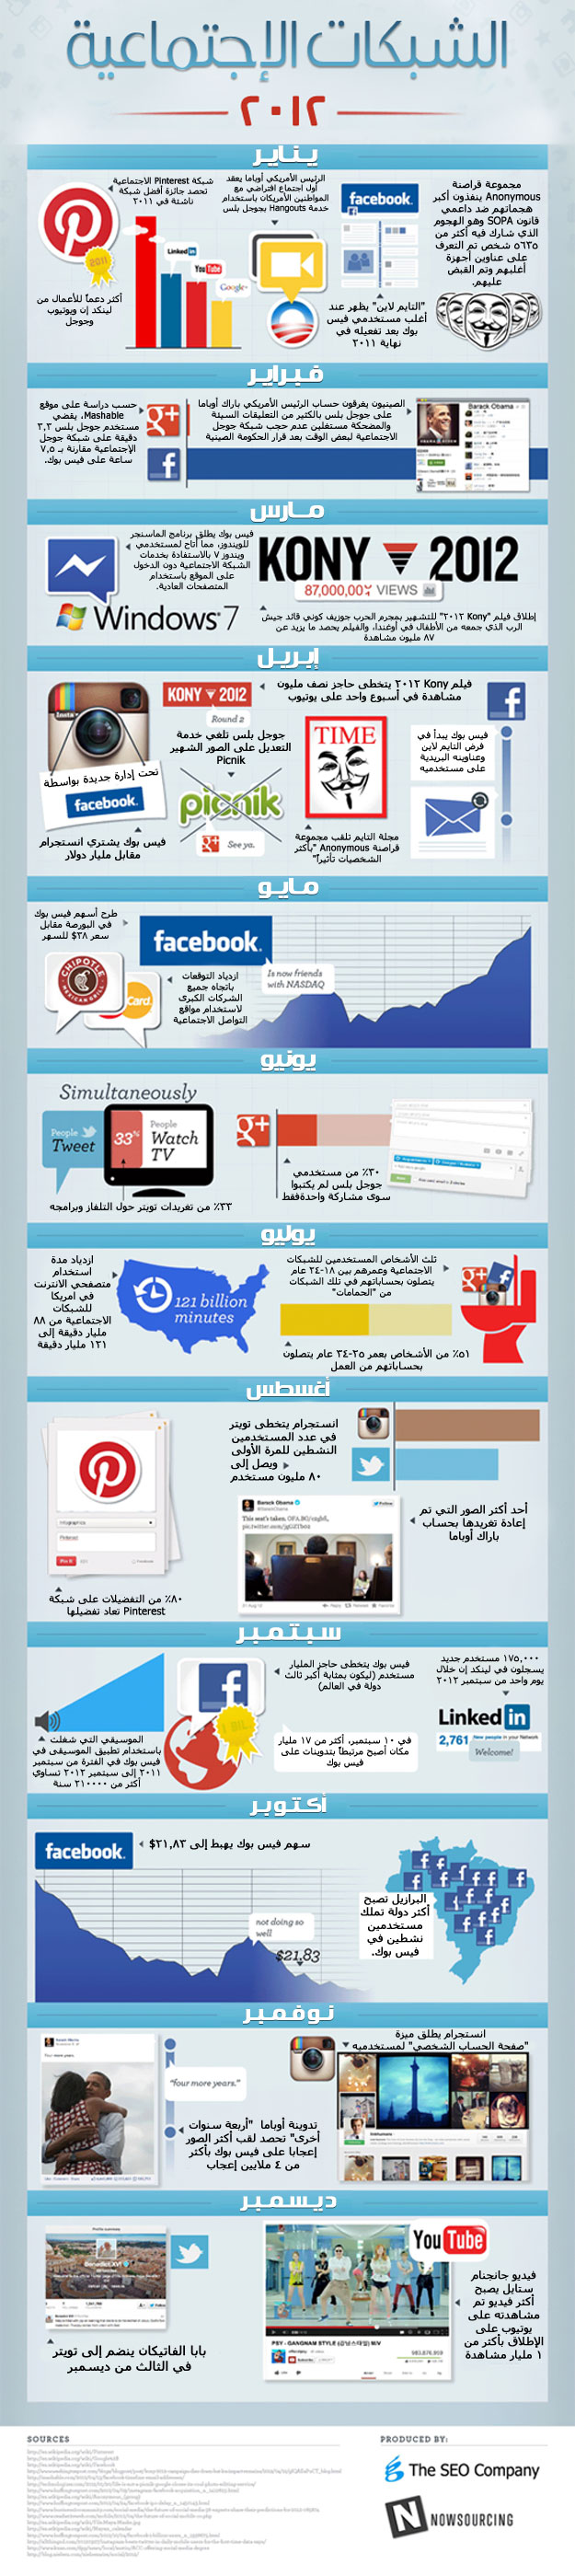 إنفوجراف:أهم لحظات الشبكات الاجتماعية في 2012